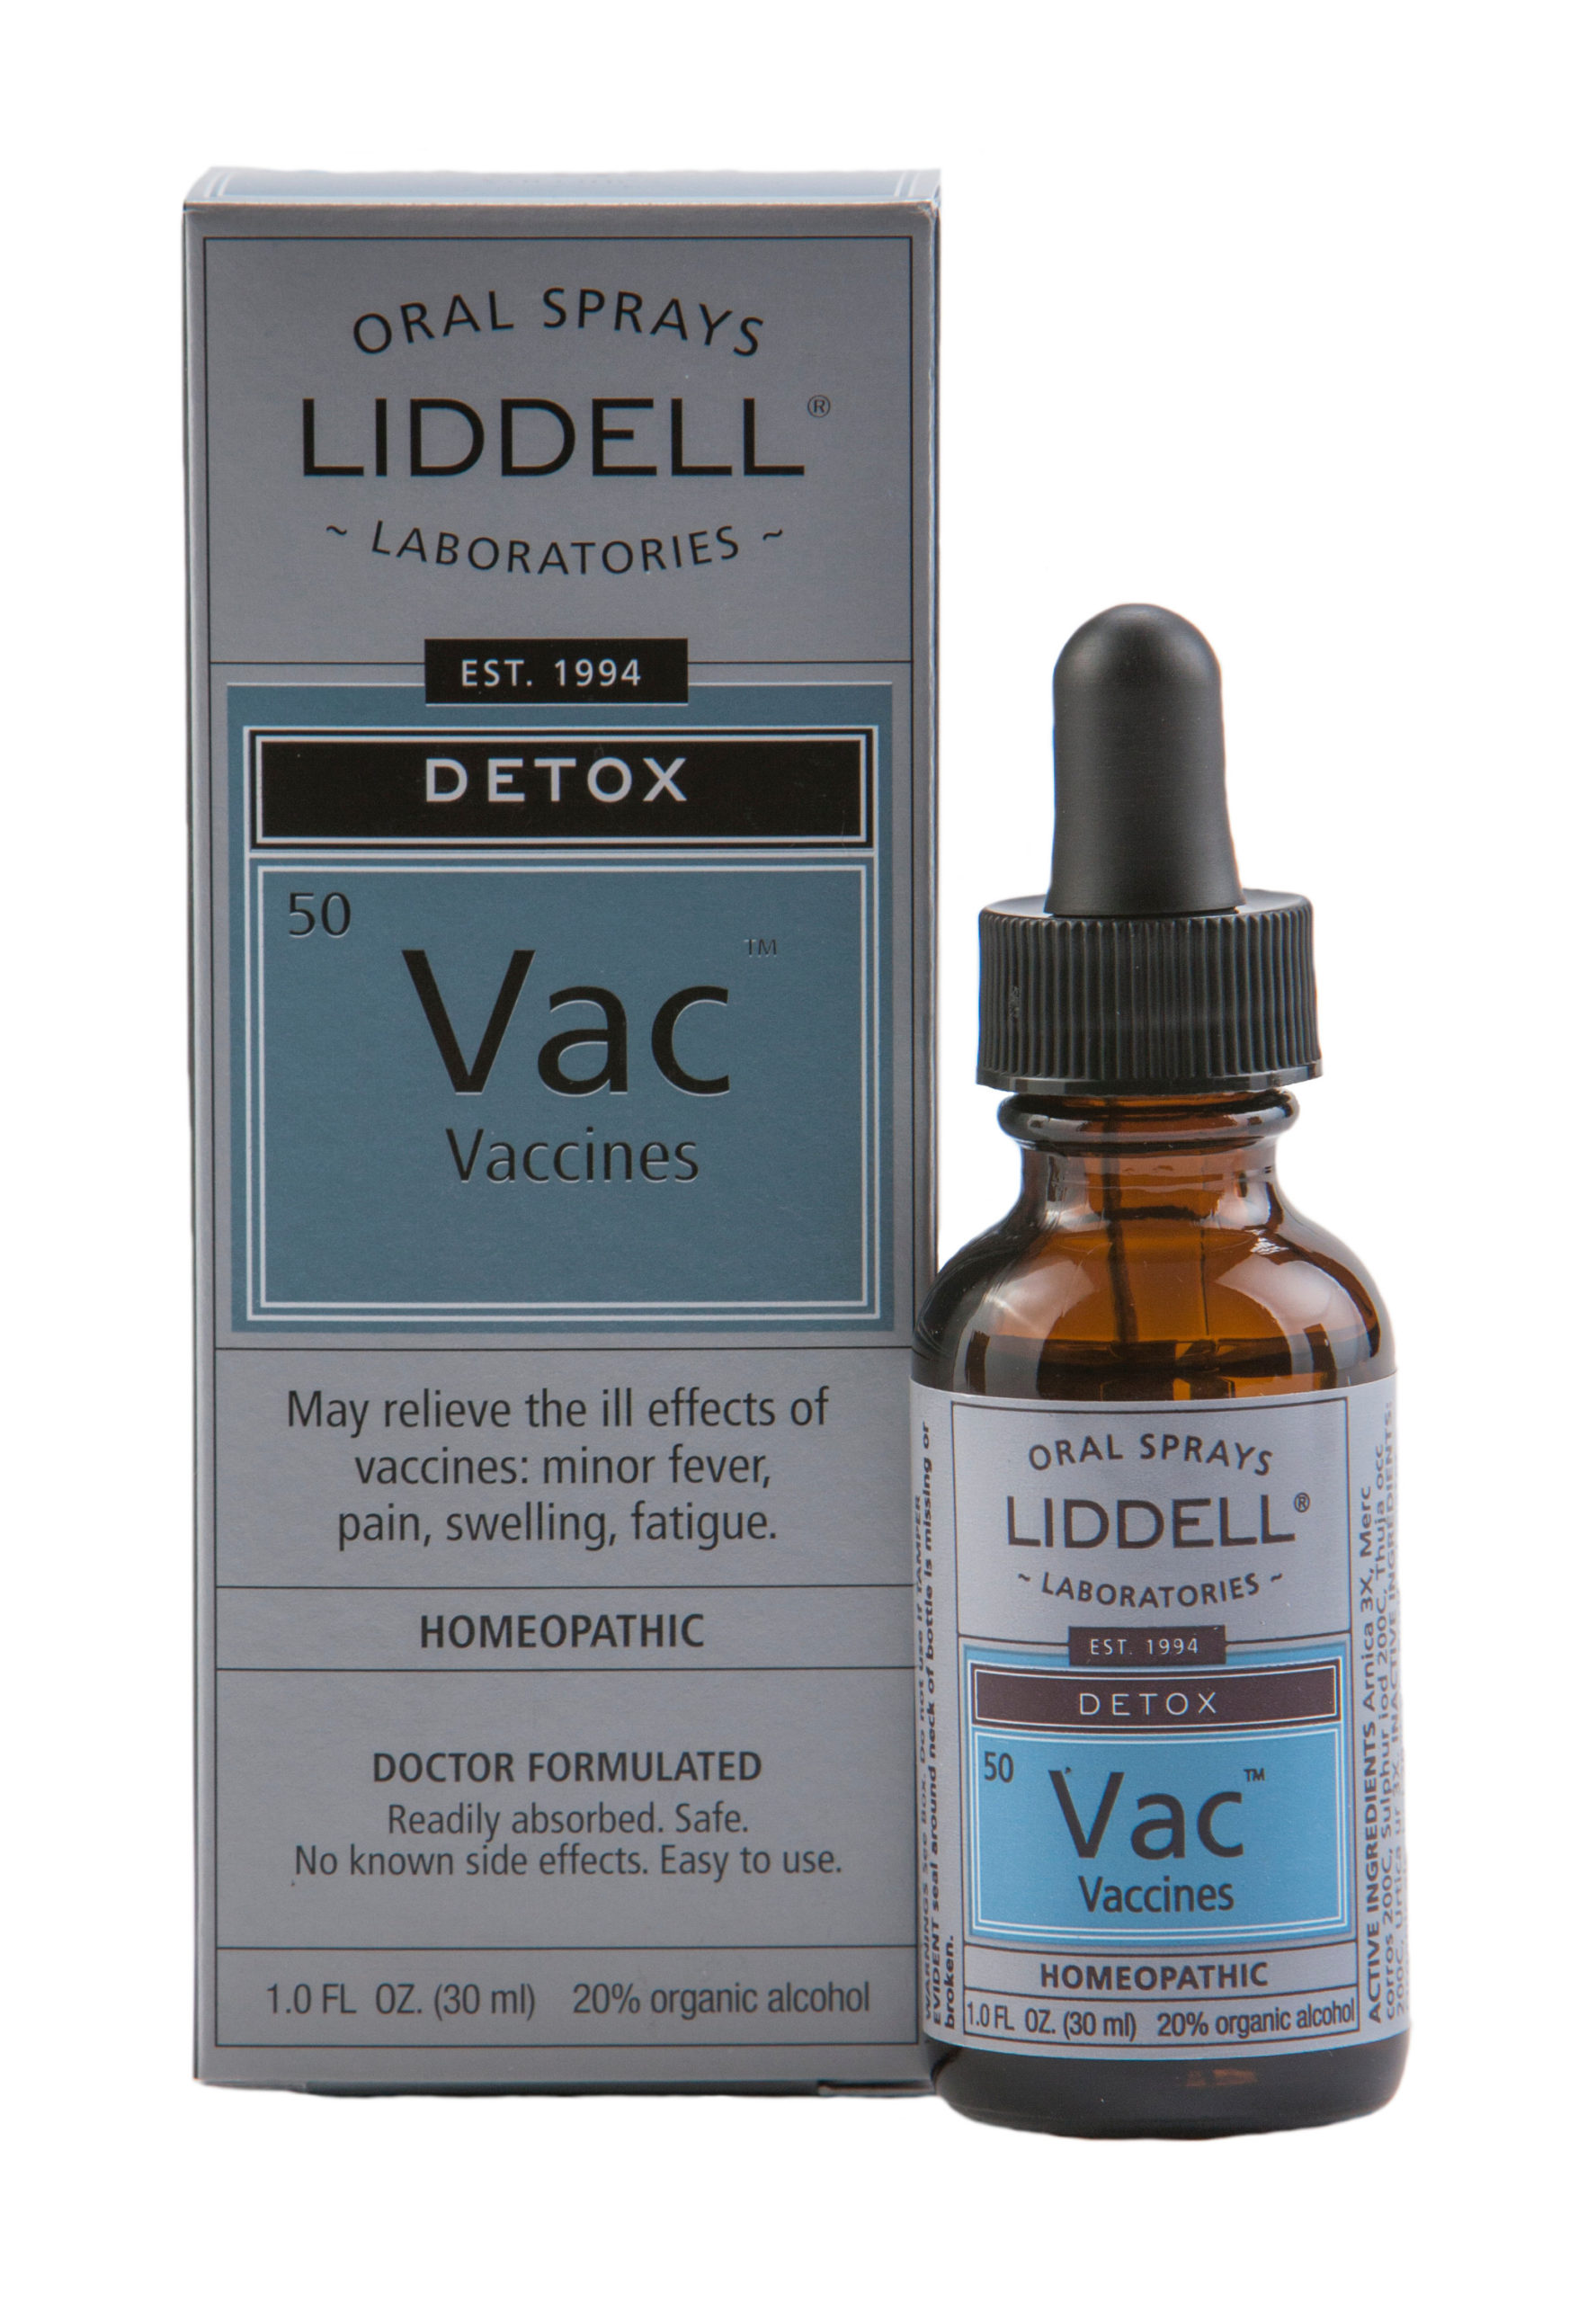 Vac, Vaccines - Detox